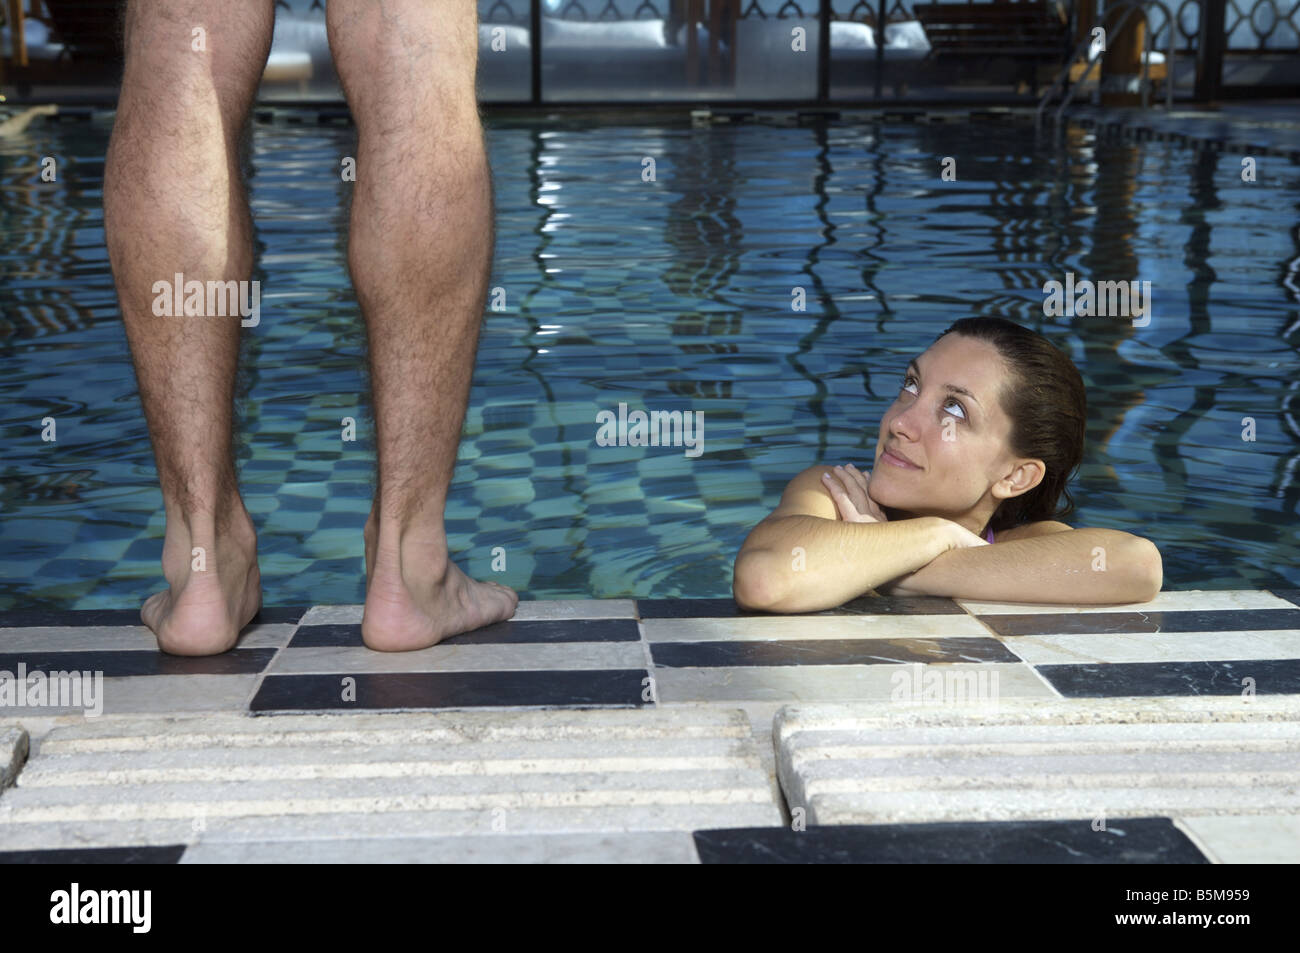 Une femme dans la piscine à la recherche jusqu'à un homme. Banque D'Images